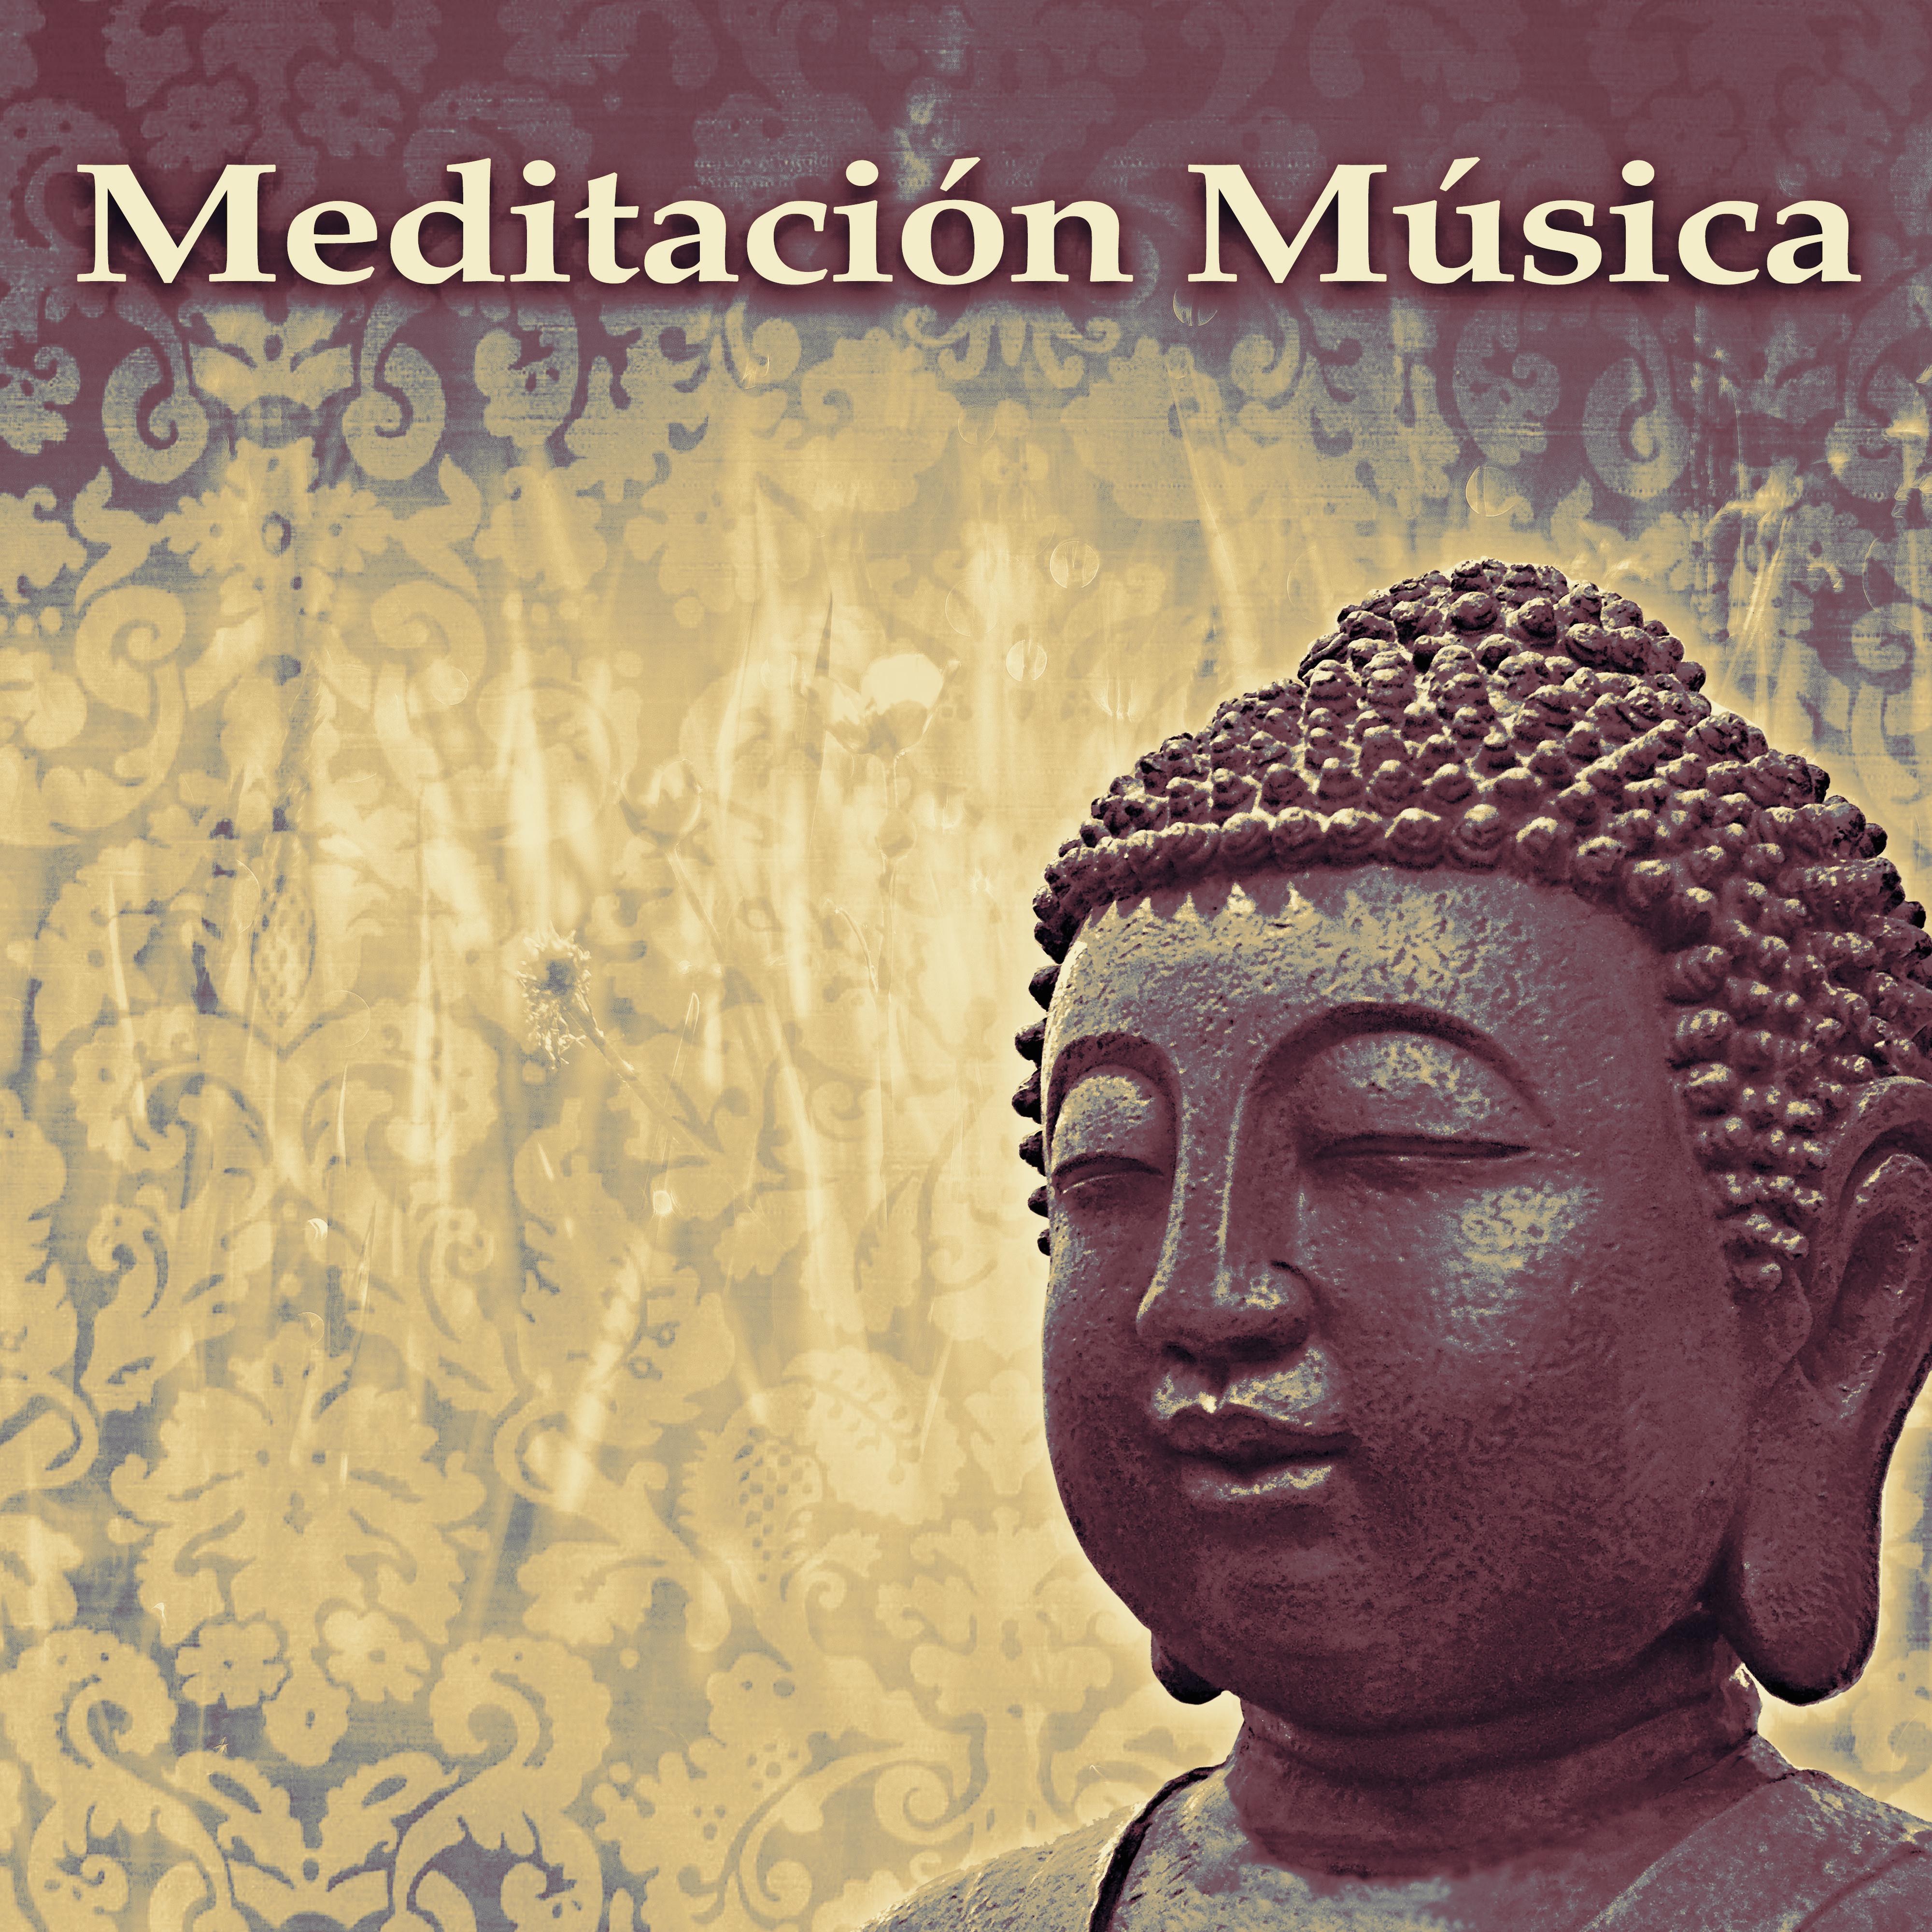 Meditacio n Mu sica  Mejor Mu sica Relajante Para la Meditacio n, el Yoga, Descansar, Spa, Masaje